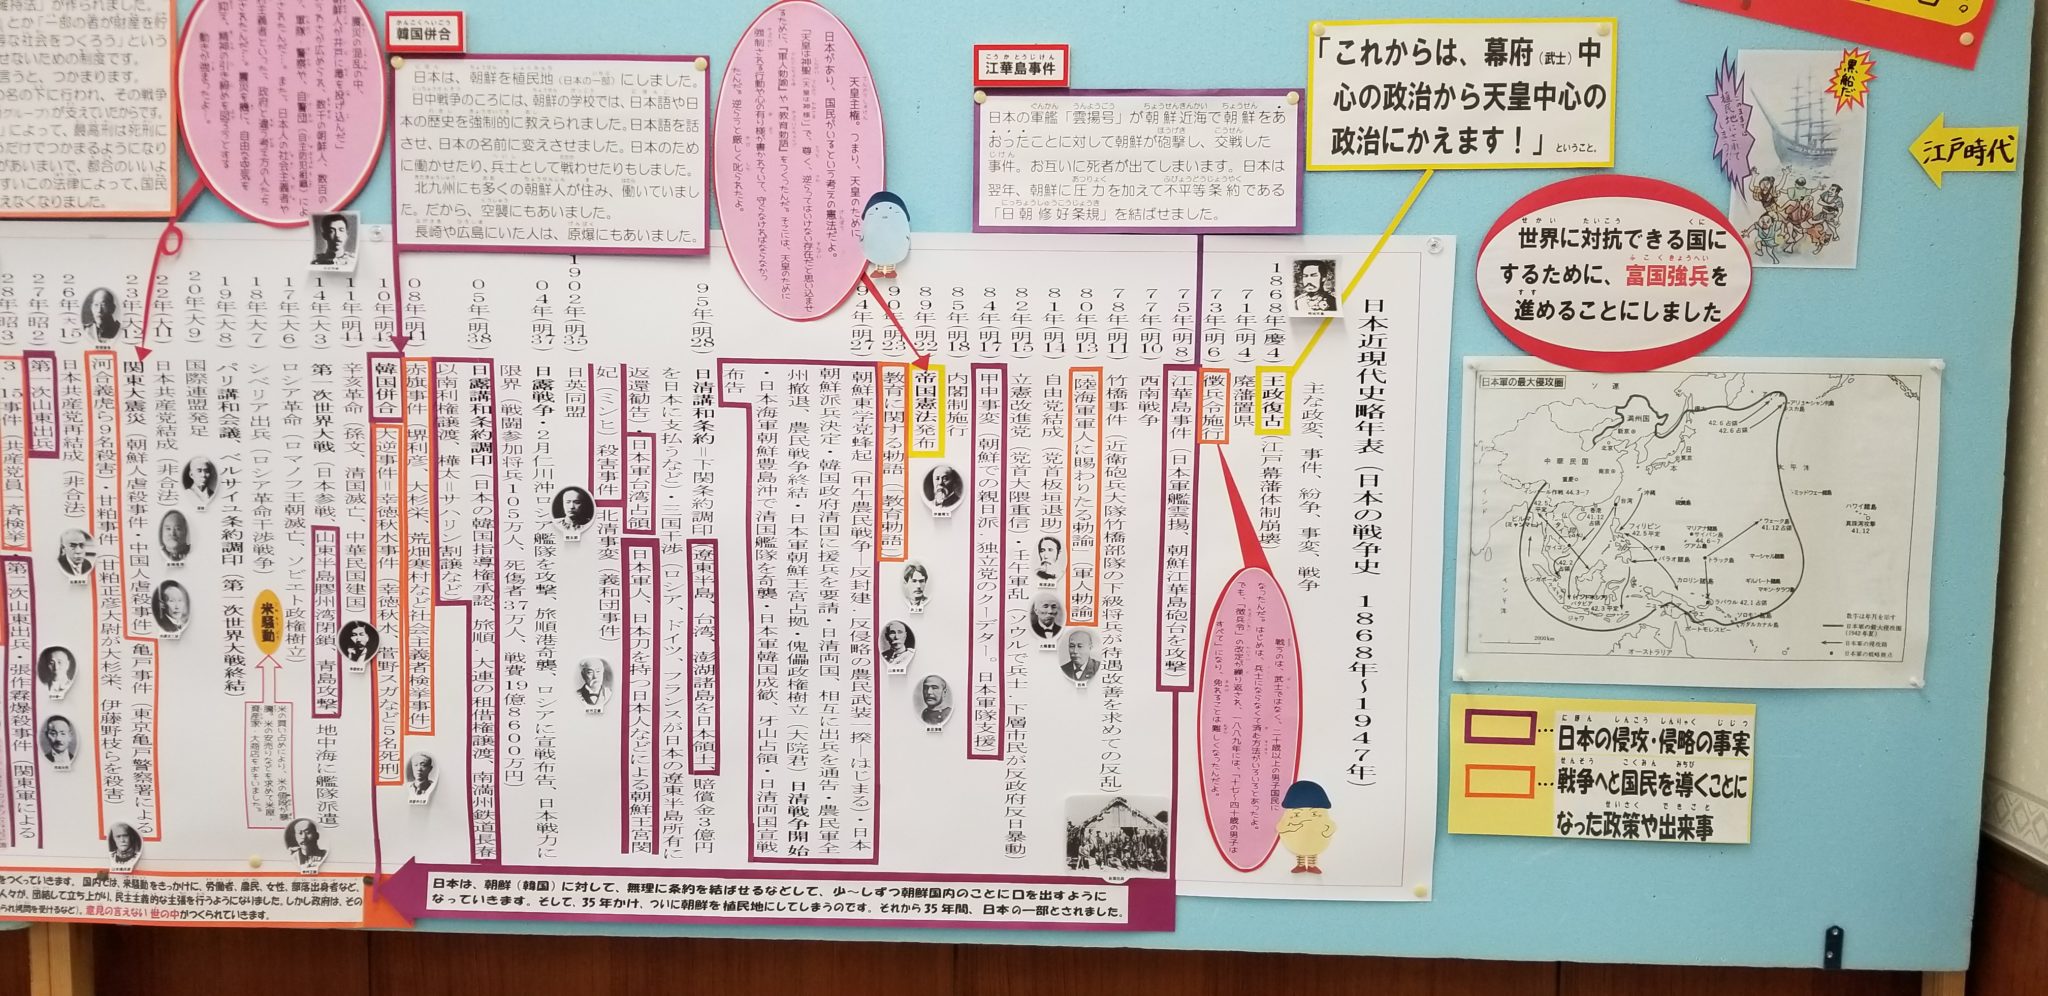 日本の戦争史年表									北九州平和資料館